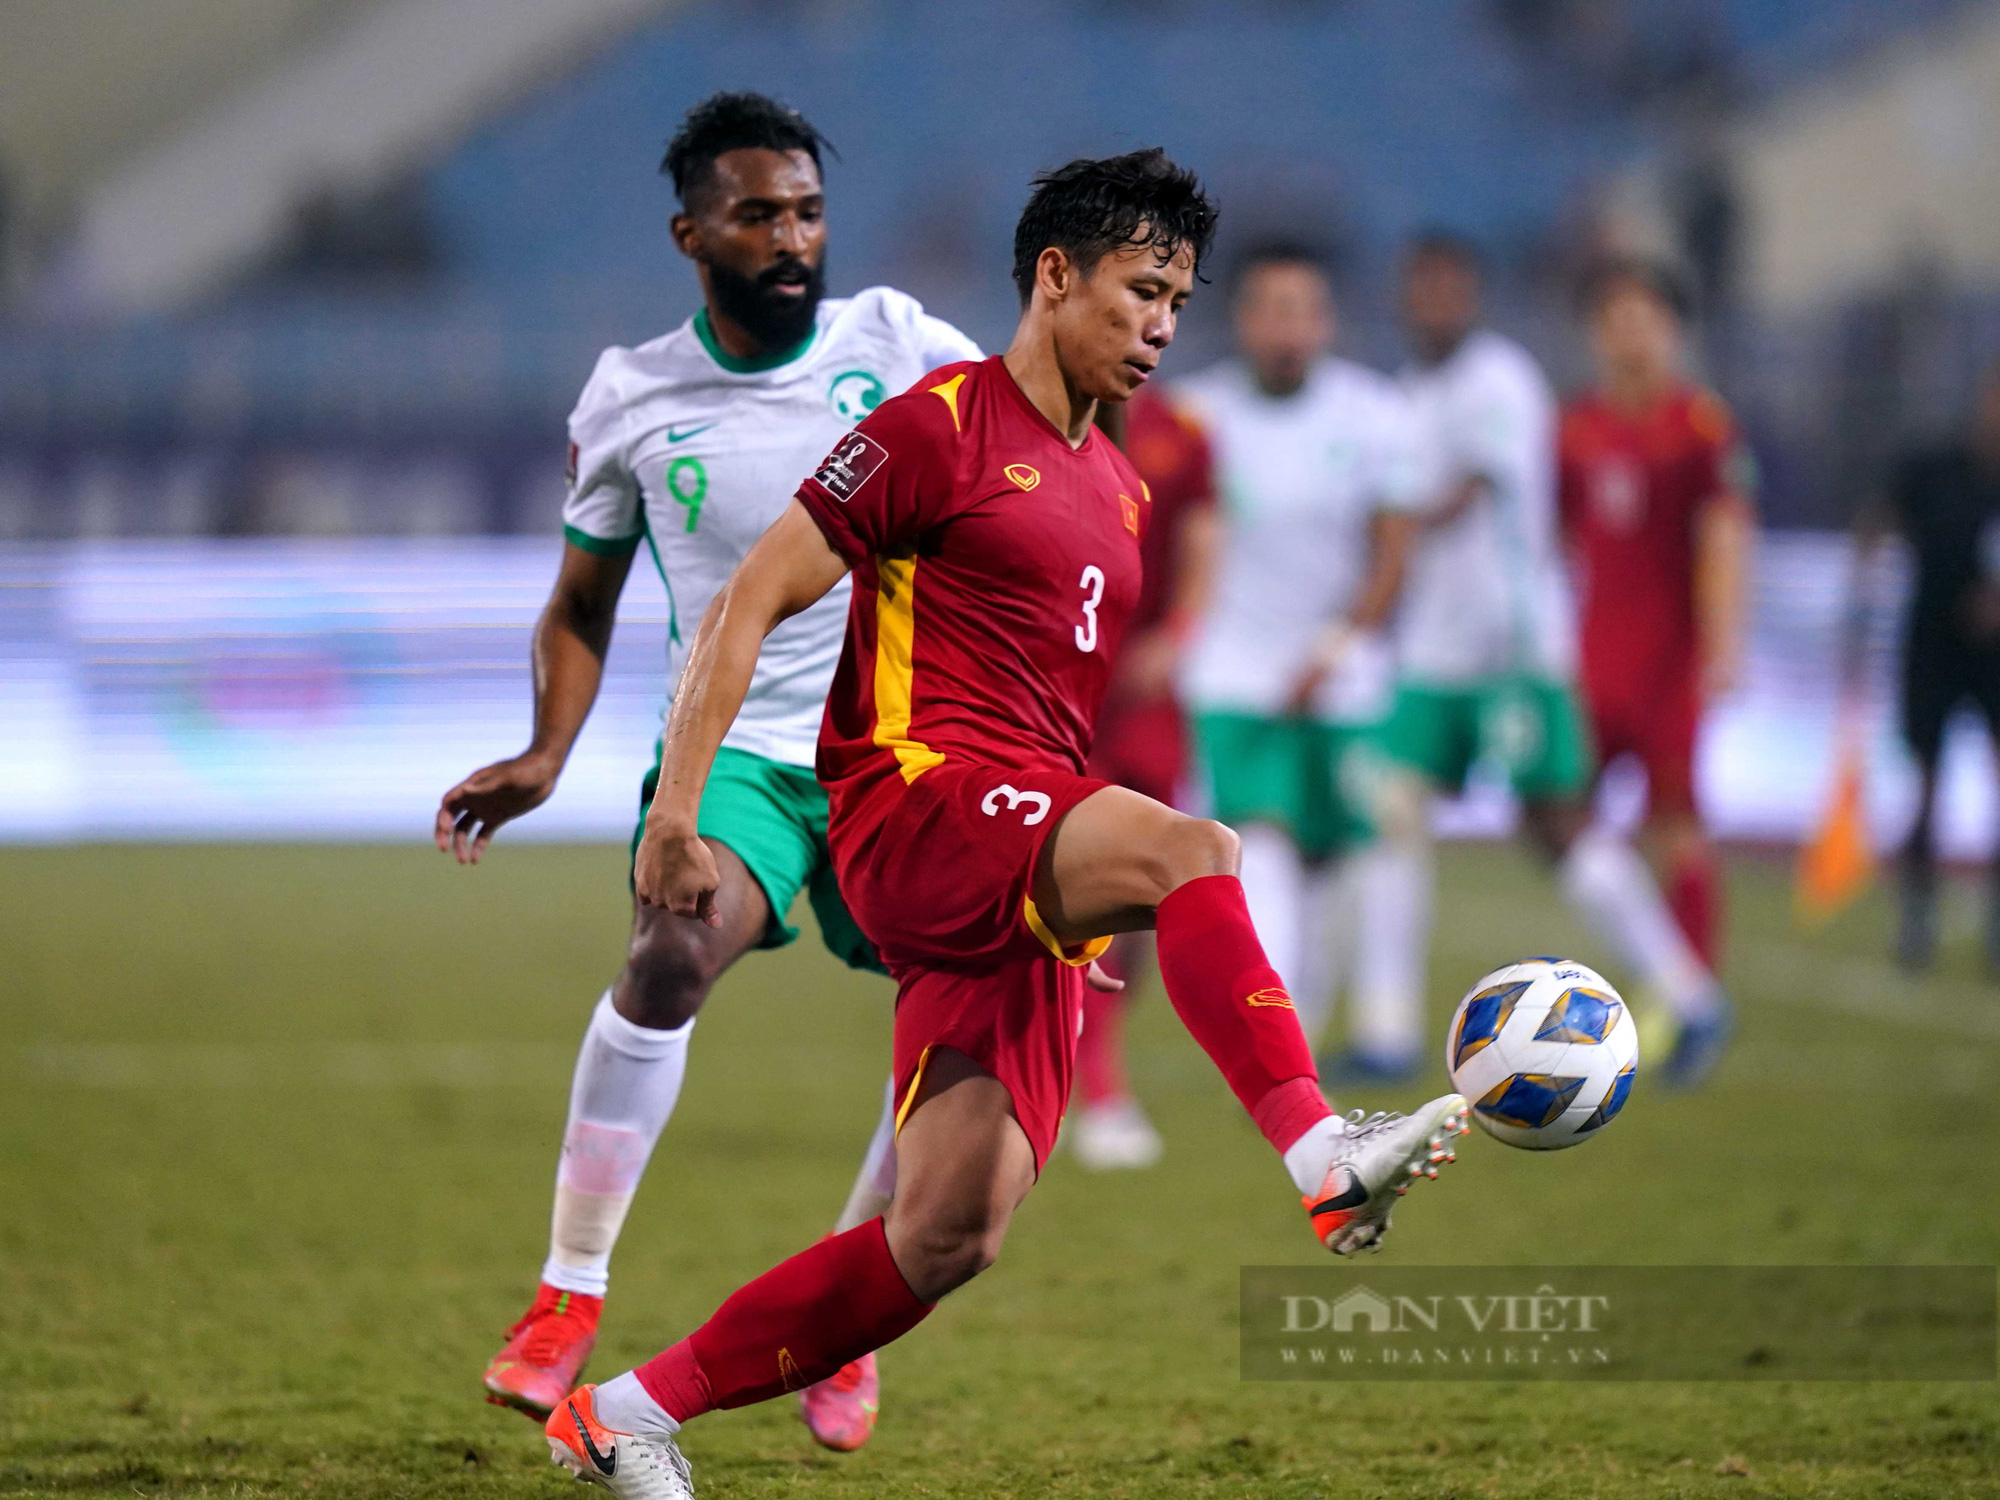 Chùm ảnh tuyển Việt Nam thi đấu lăn xả trước đội tuyển Ả Rập Xê Út - Ảnh 6.